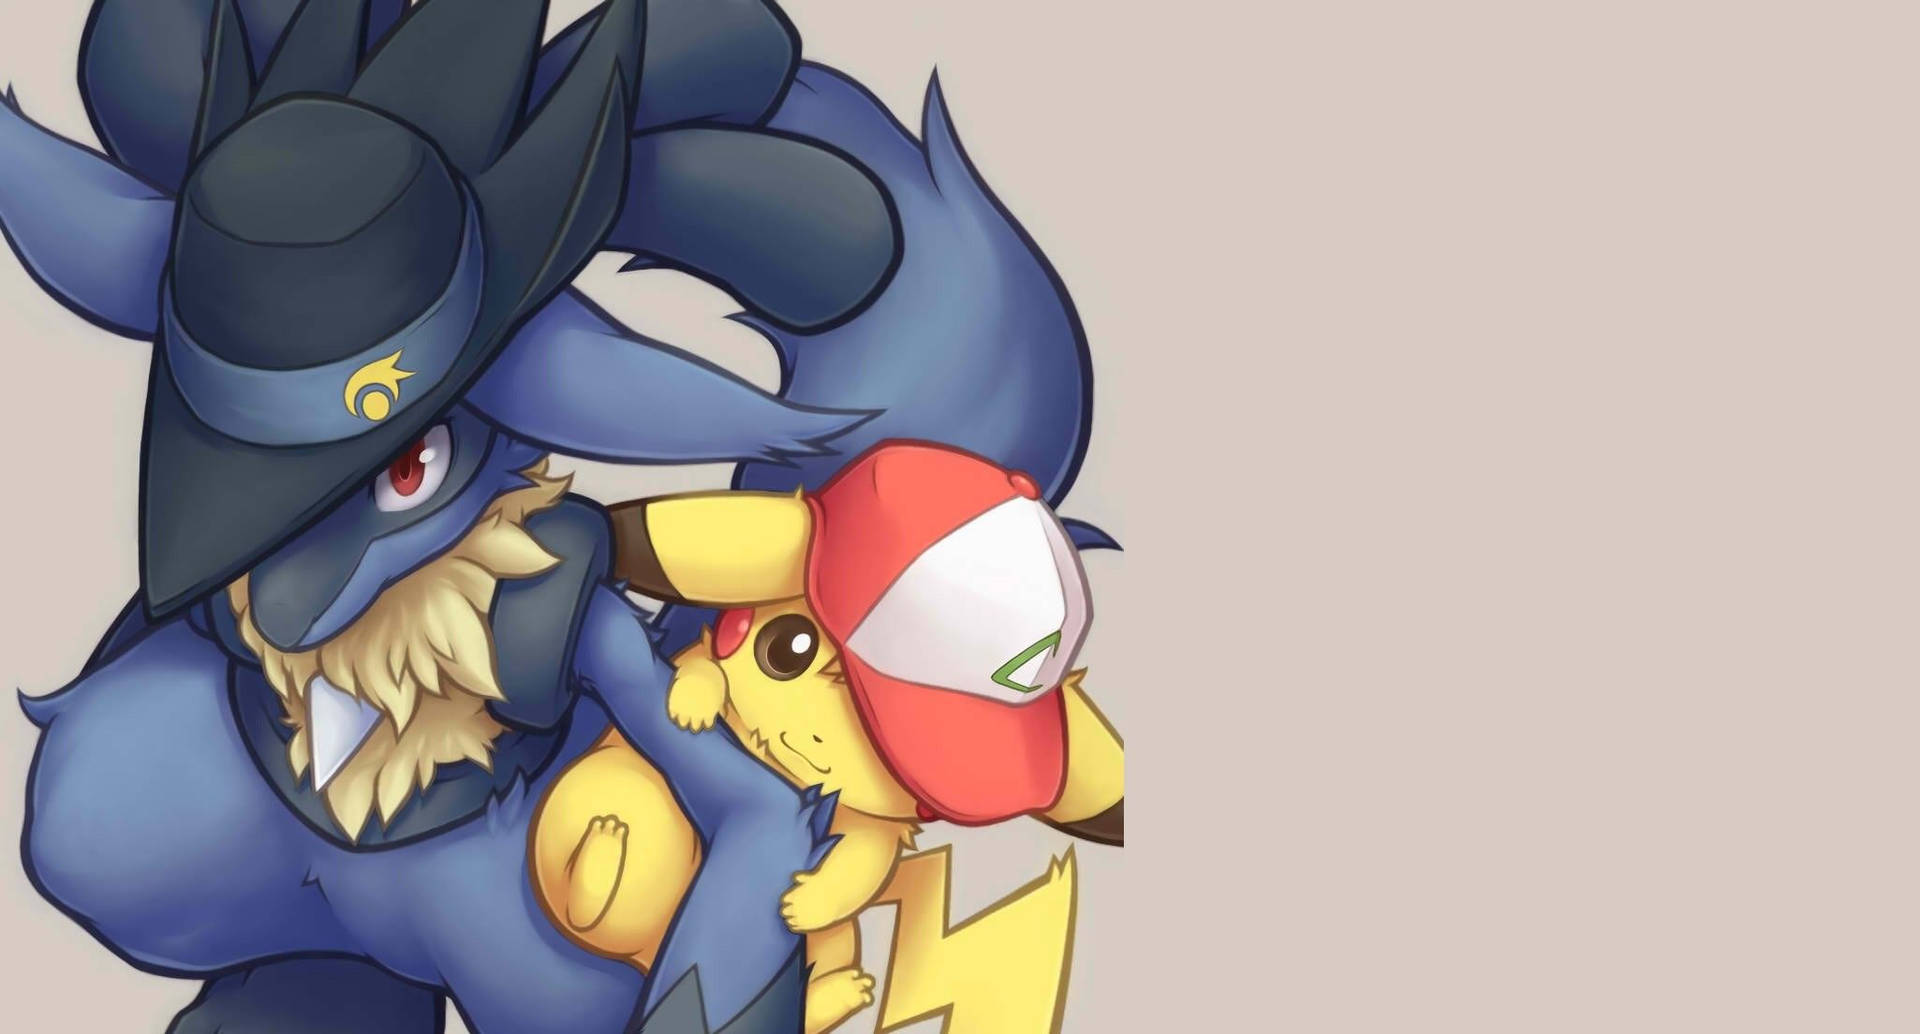 A Battle between Two Legendary Pokémon - Lucario and Pikachu Wallpaper